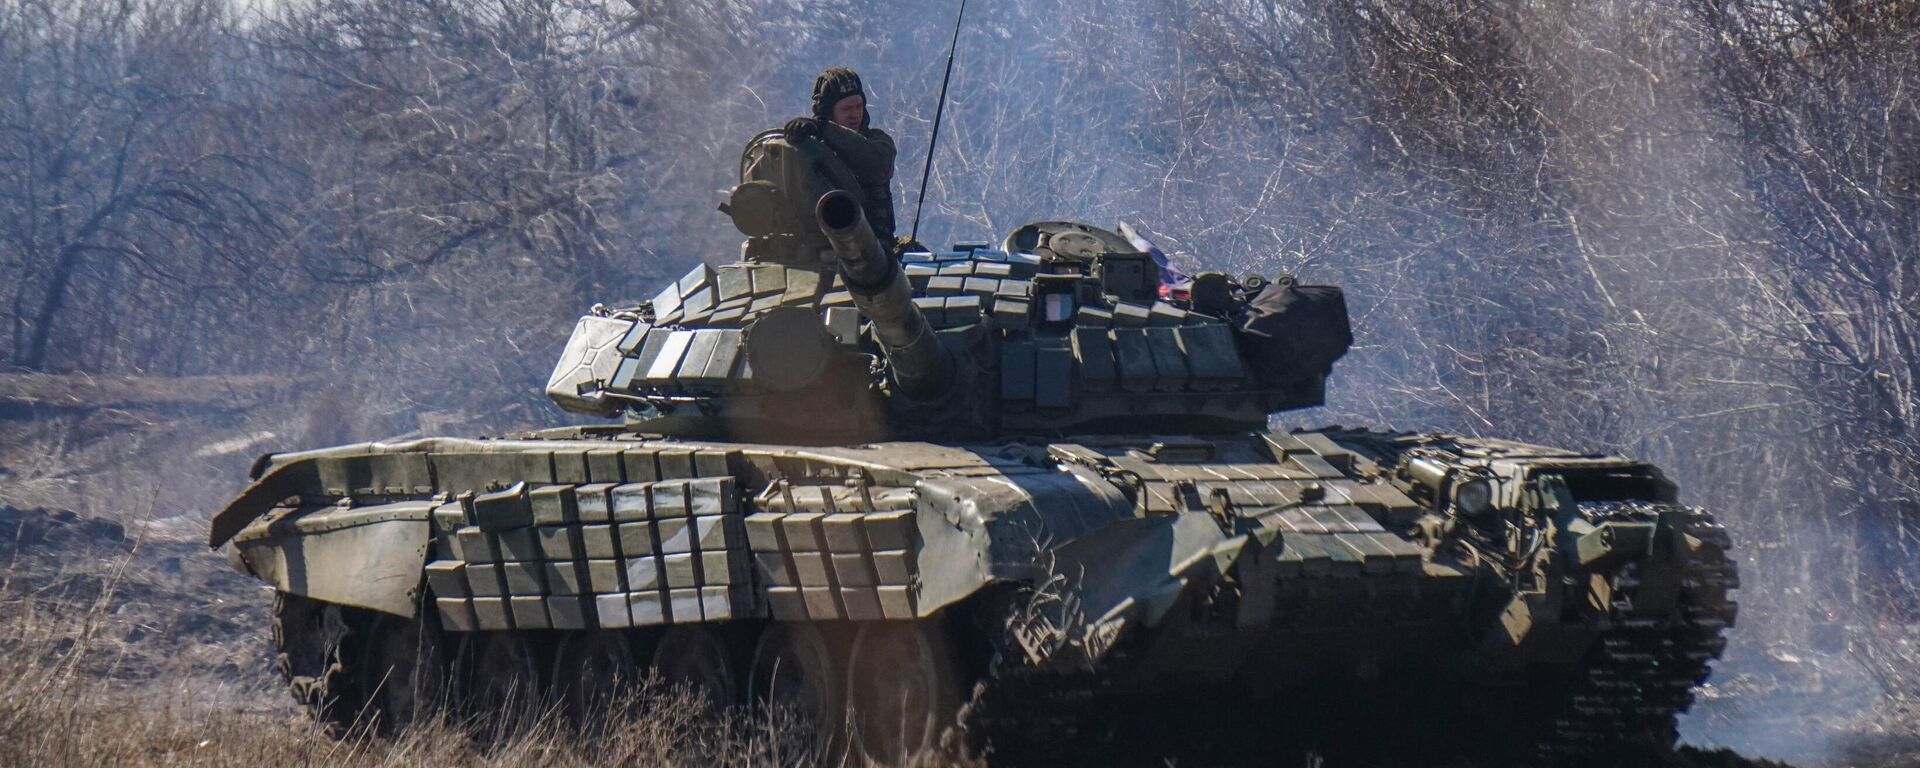 Các binh sĩ thuộc Lực lượng Dân quân Nhân dân của CHDCND Triều Tiên đang tấn công trong khu vực giới tuyến ở làng Maryinka, vùng Donetsk. - Sputnik Việt Nam, 1920, 23.03.2022